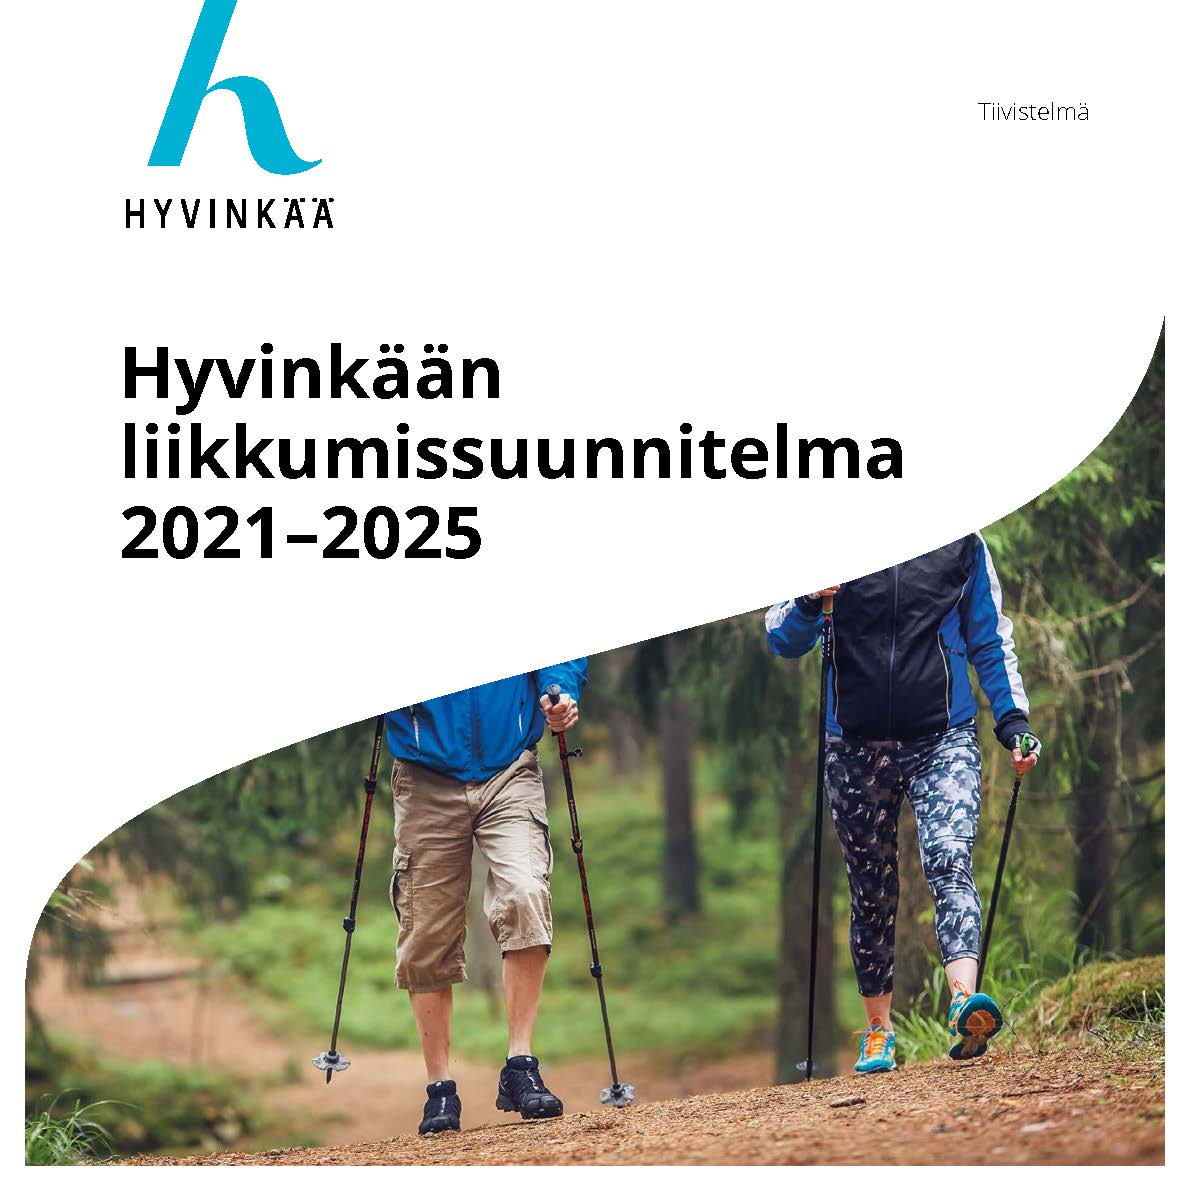 Hyvinkaa_liikkumissuunnitelma 2021-2025